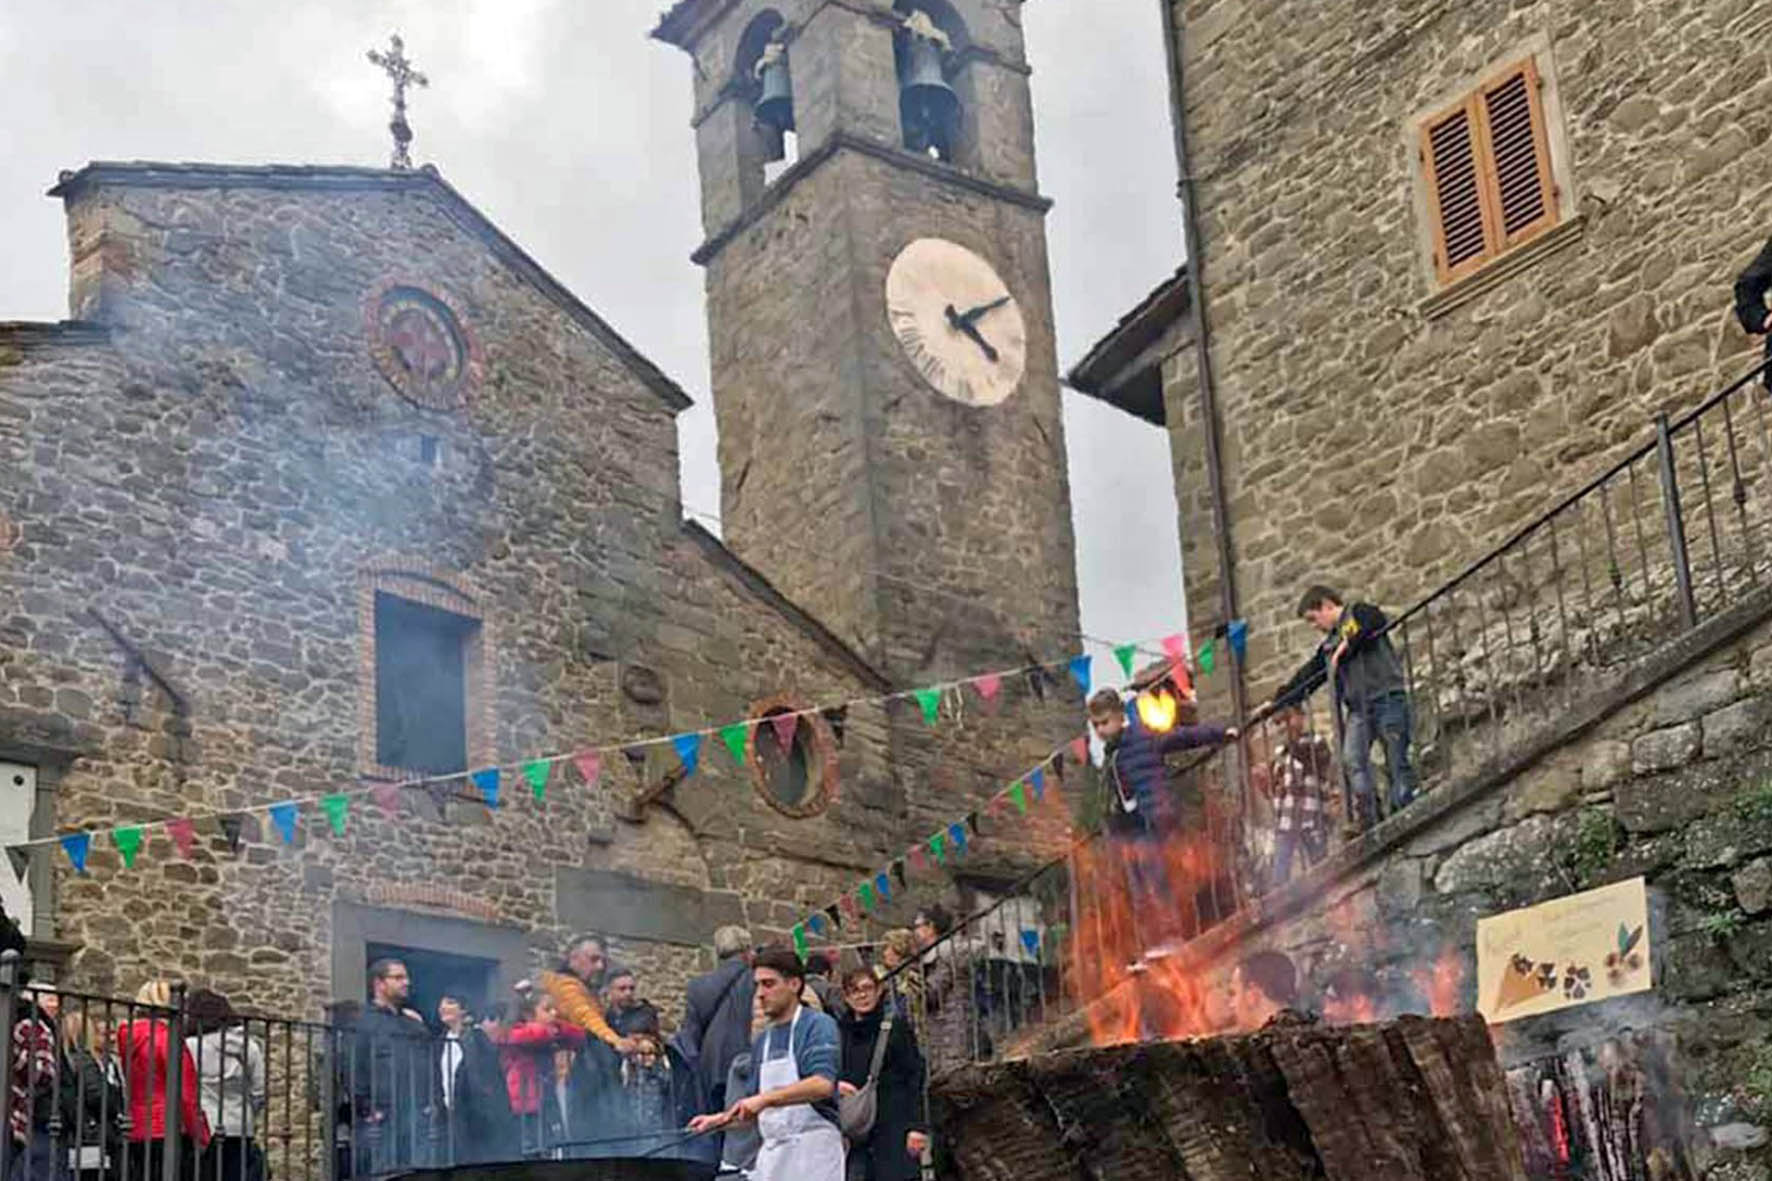 Festa di Castagnatura, un fine settimana tra tradizioni e sapori